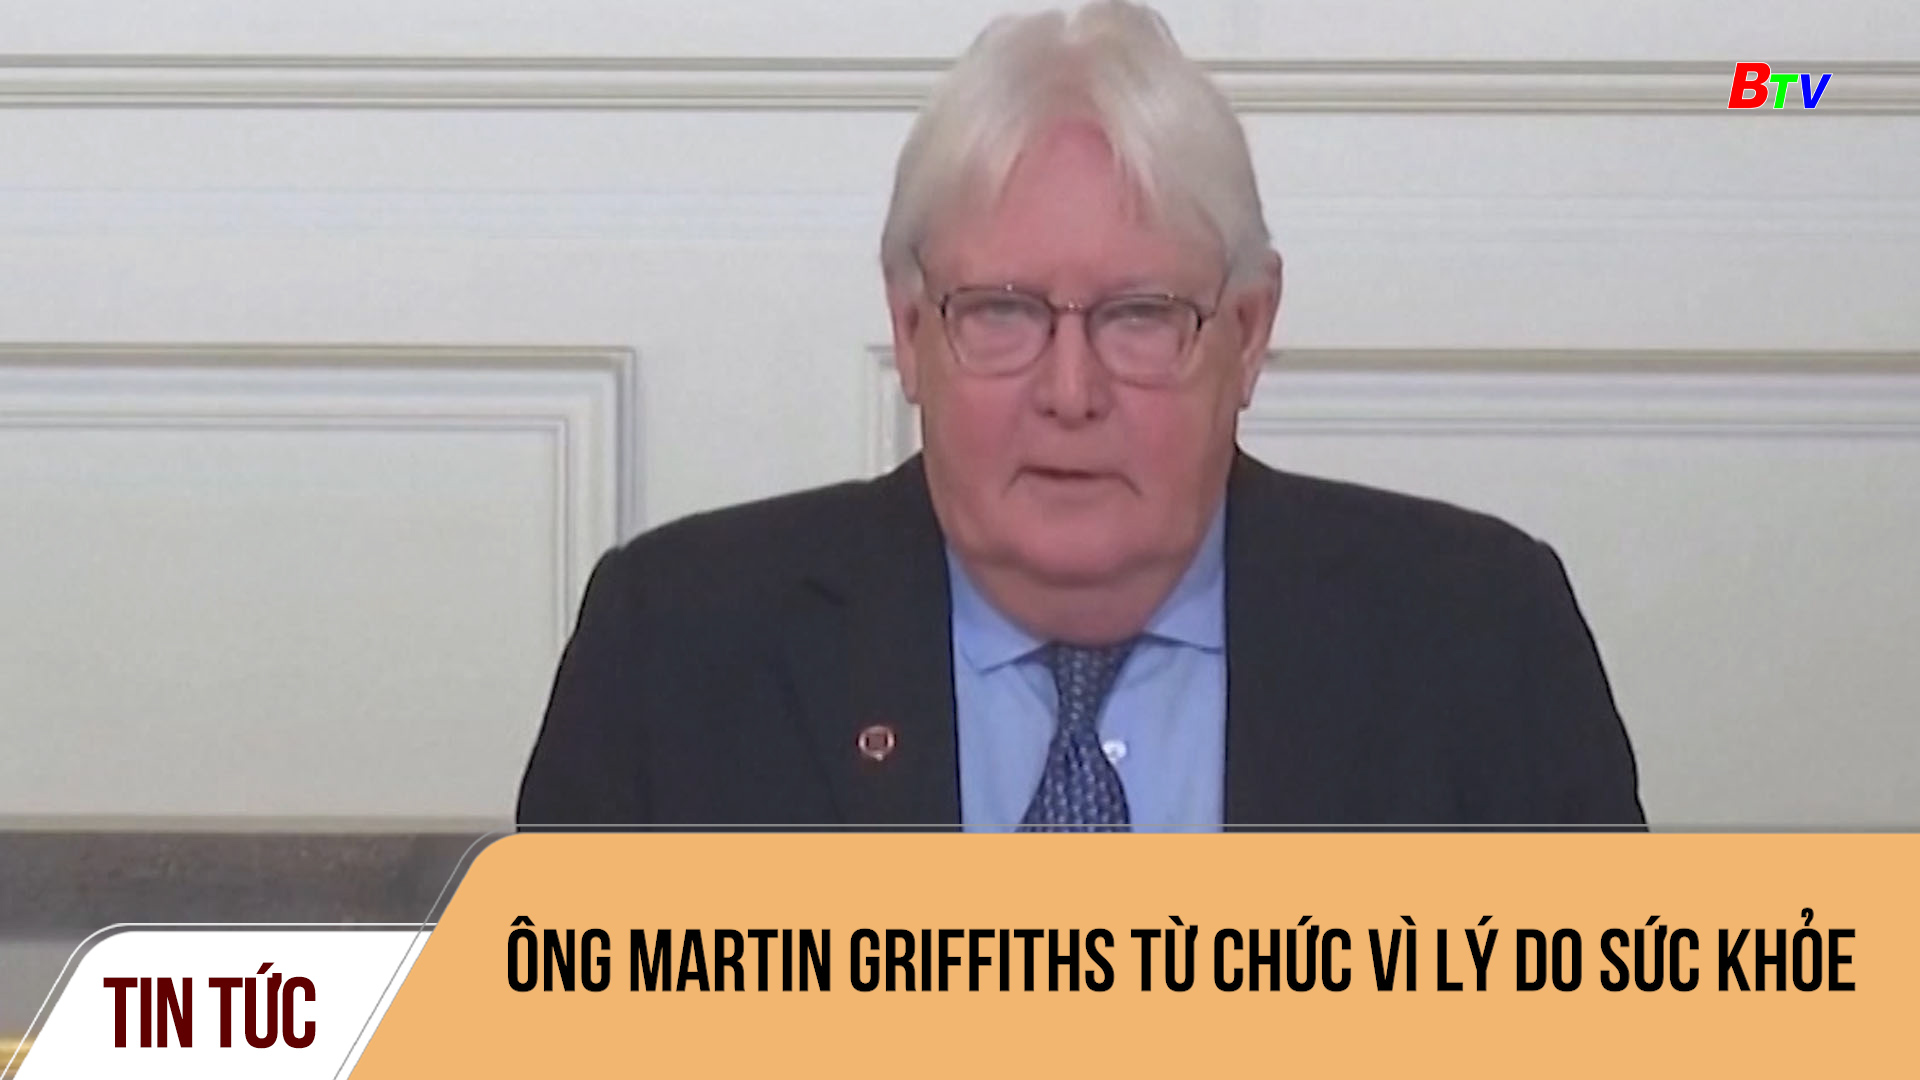 Ông Martin Griffiths từ chức vì lý do sức khỏe